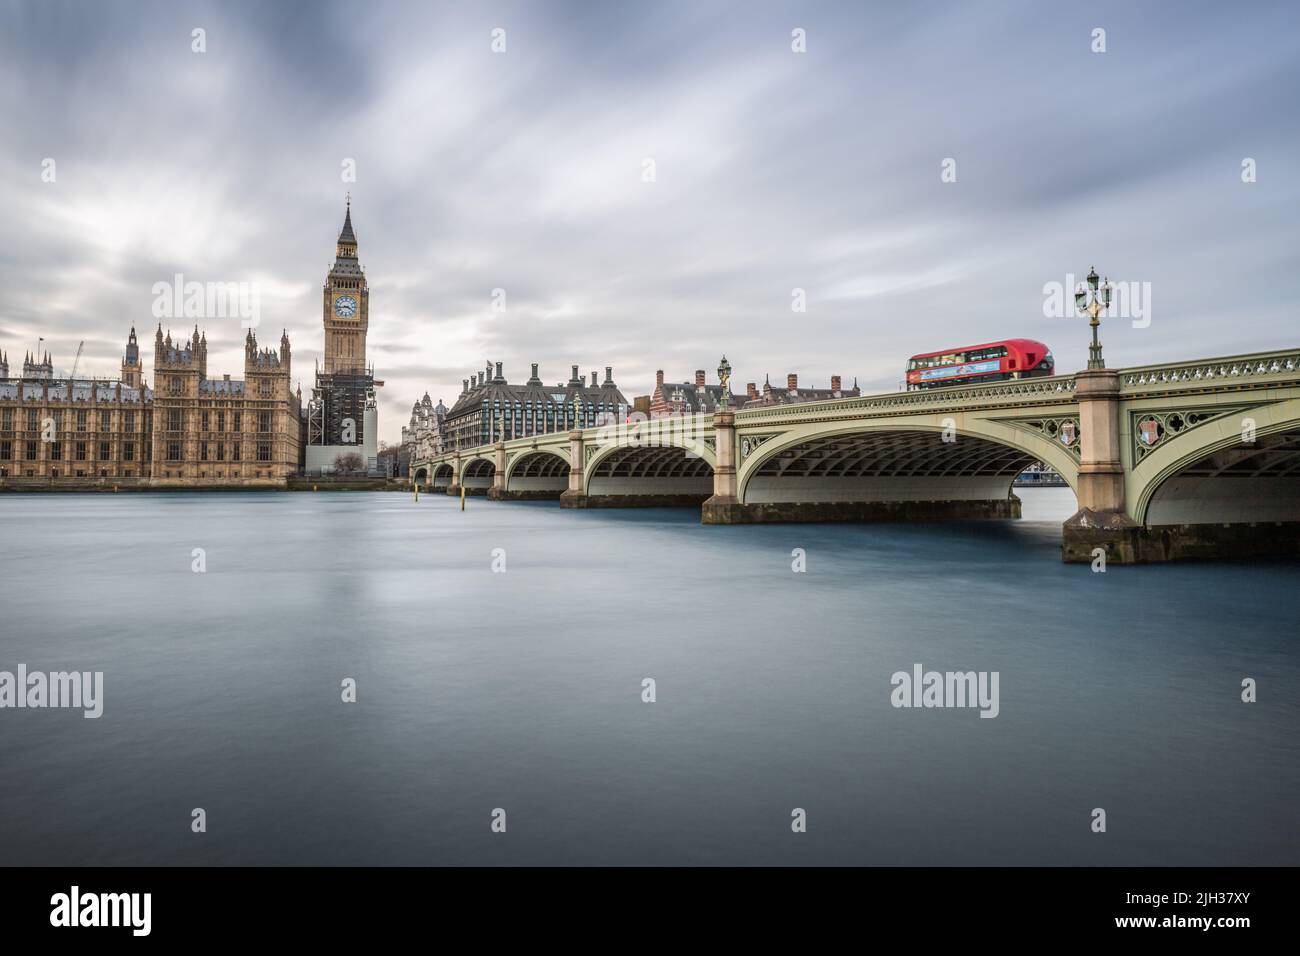 Big Ben, le Parlement et un bus rouge sur le pont de Westminster, Londres, Royaume-Uni Banque D'Images